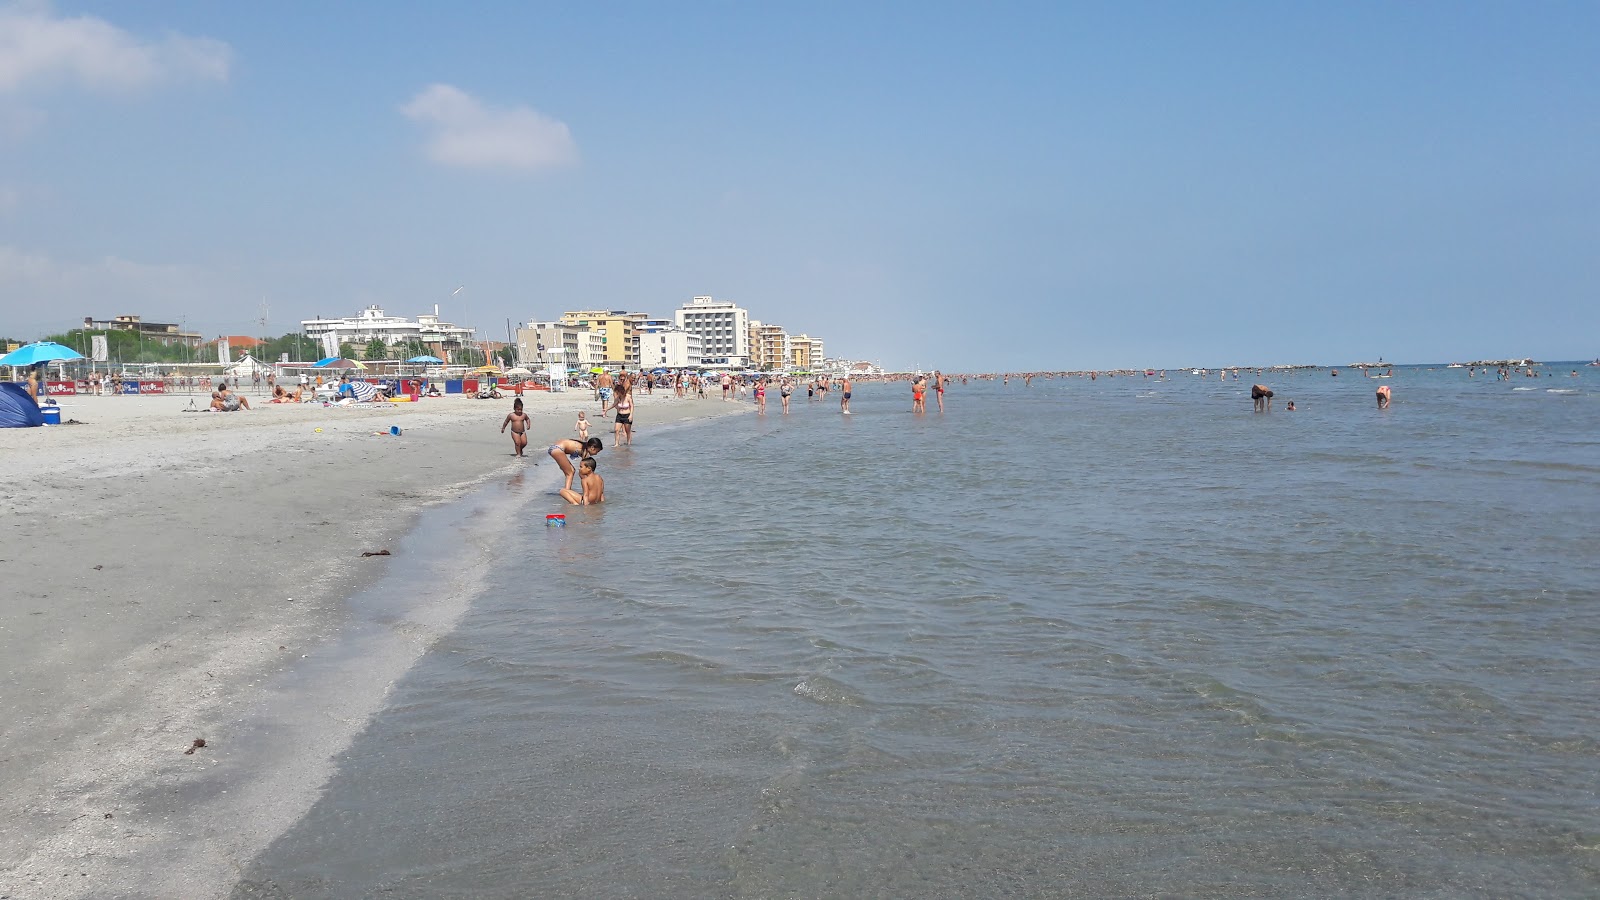 Foto af Spiaggia Libera Igea Marina med lang lige kyst